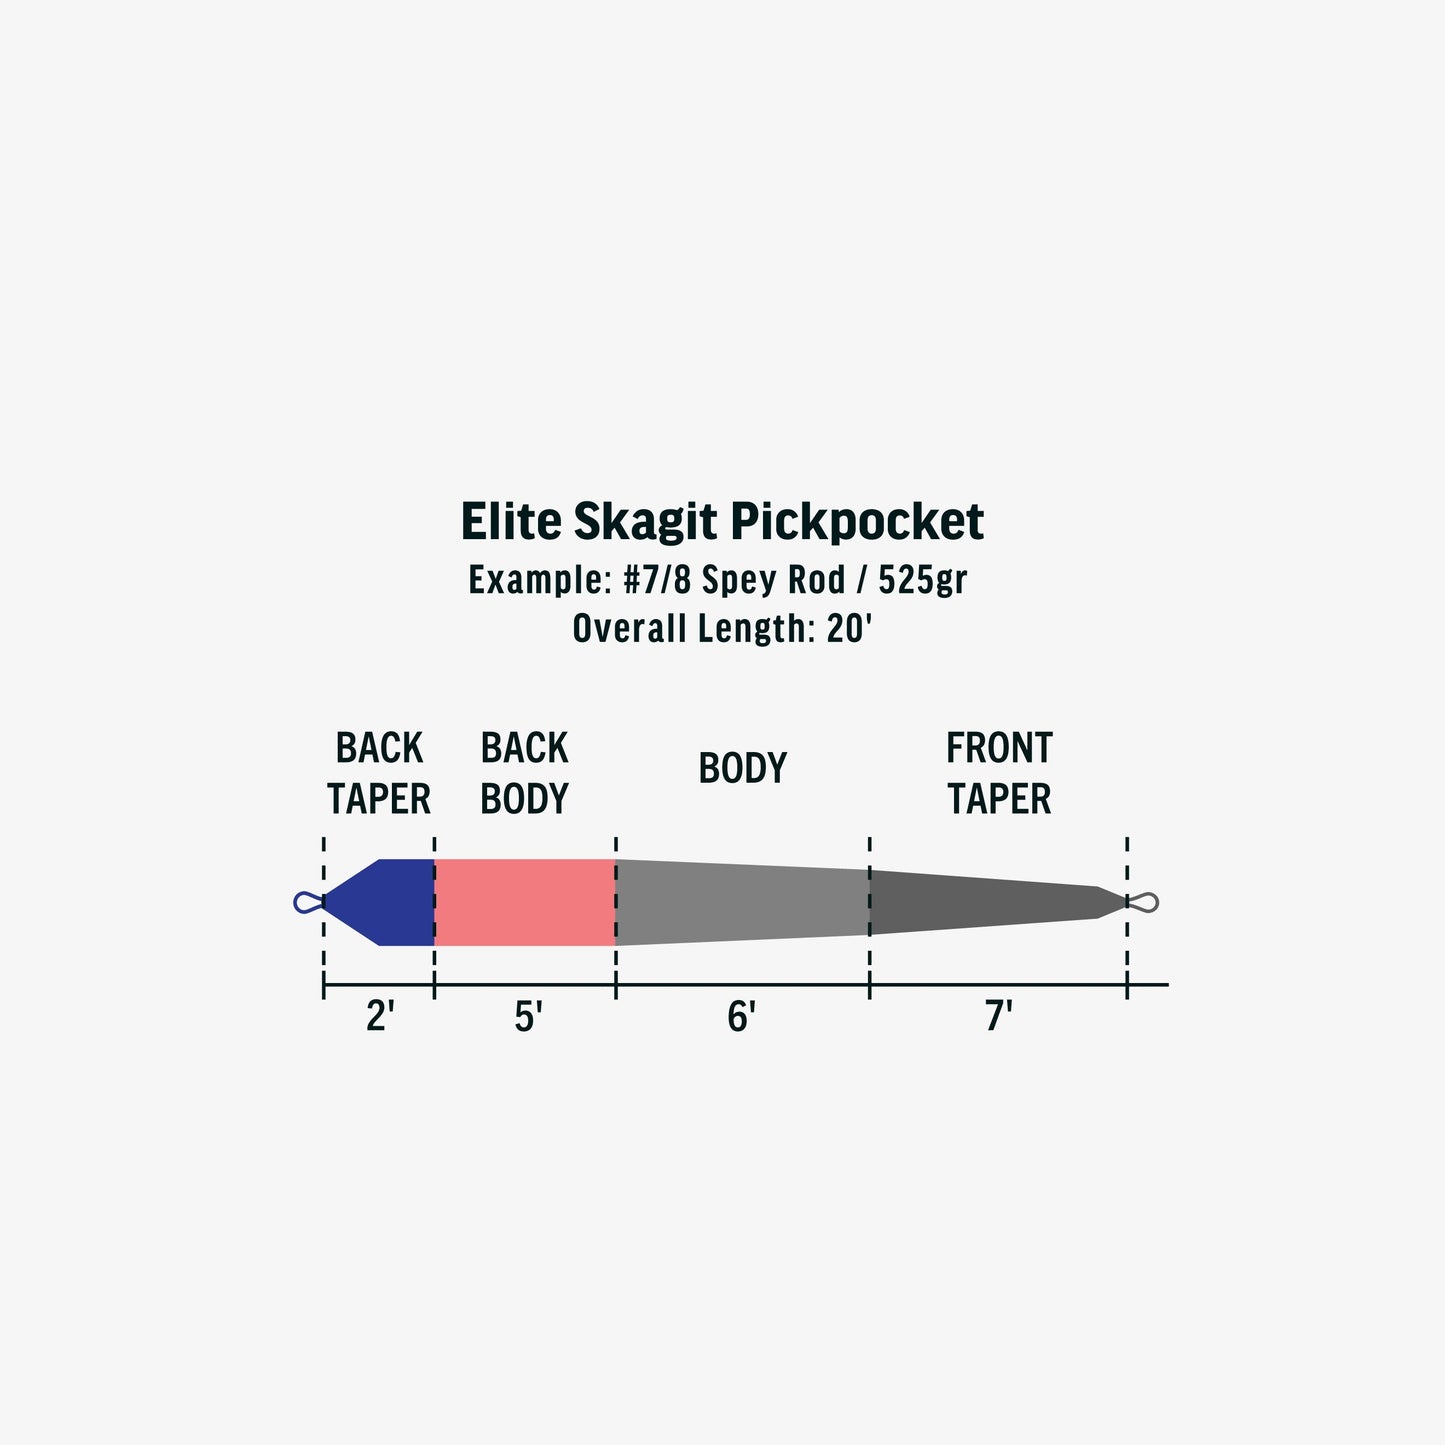 Elite Skagit Pickpocket